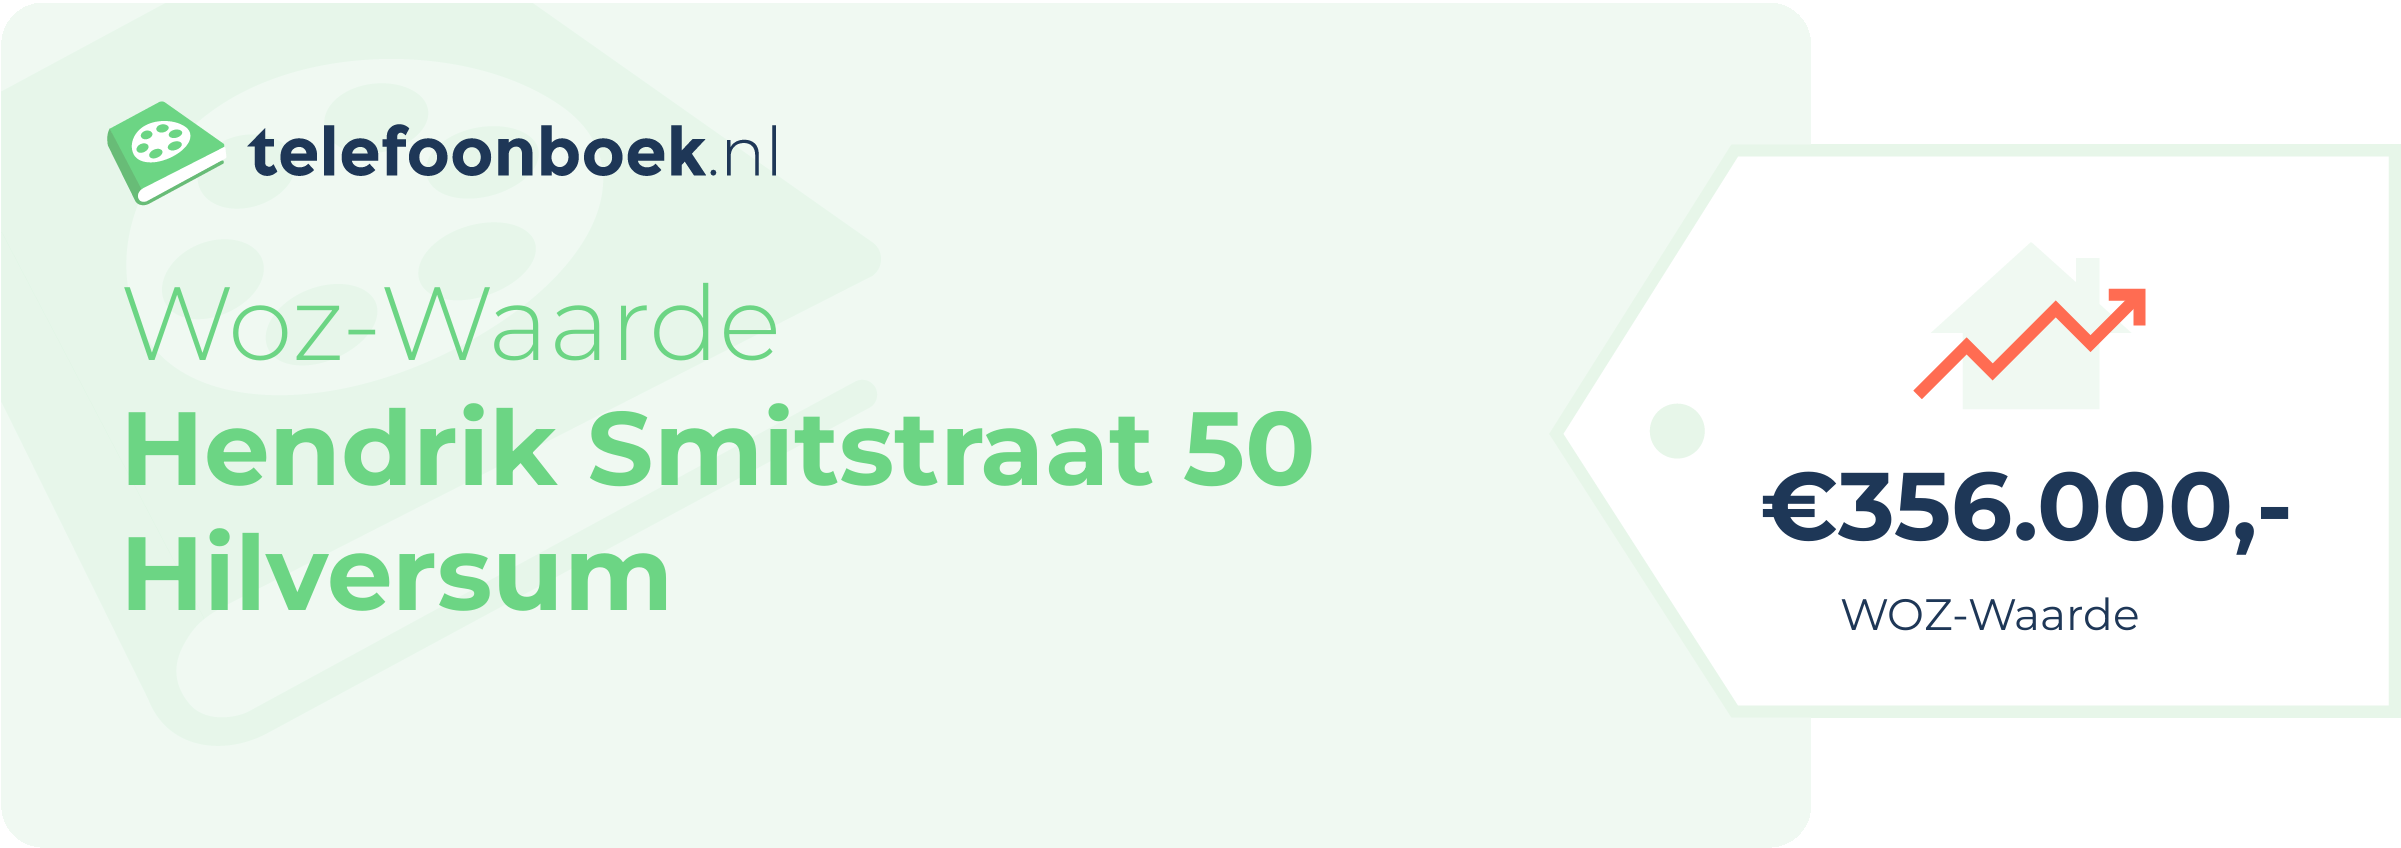 WOZ-waarde Hendrik Smitstraat 50 Hilversum